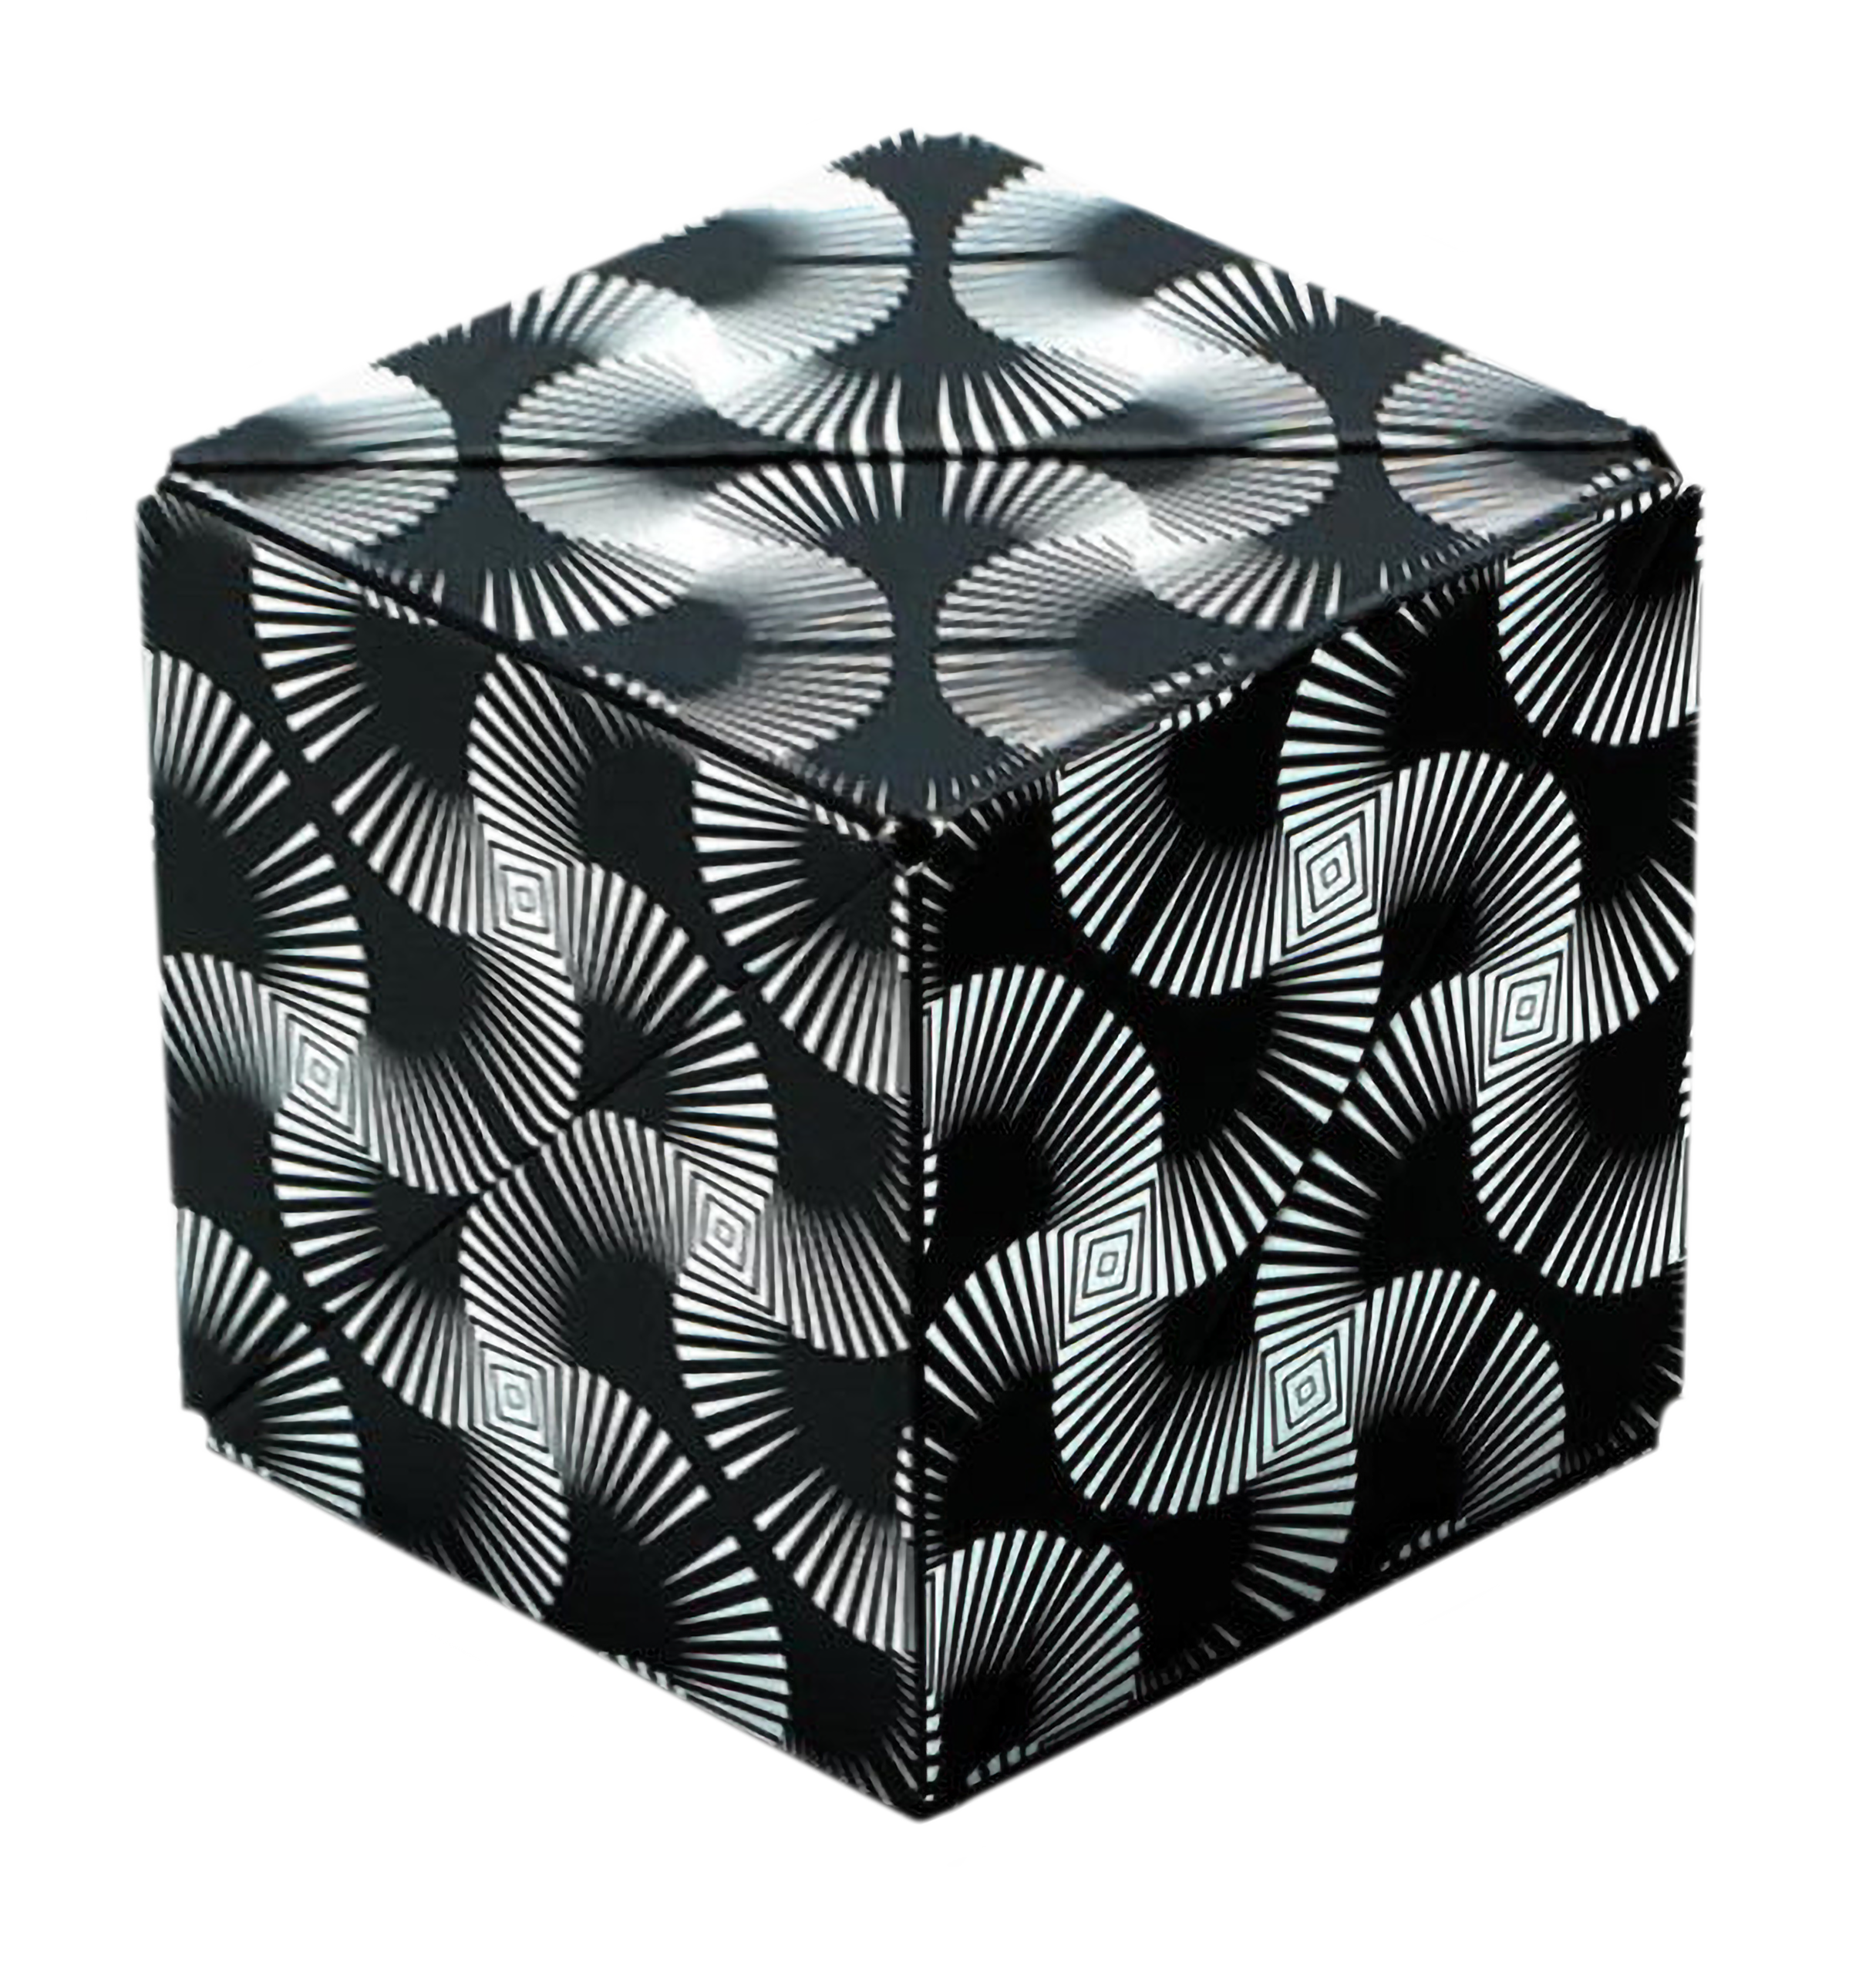   Der SHASHIBO Cube ist ein komplexes magnetisches 3D Puzzle  er besteht aus 12 Pyramiden , jede verfügt über 3 Magnete. Er kann in verschiedenste Formen umgewandelt werden. Durch die Magnete bilden sich feste zusammenhängende Formen. Mehrere GeoBender Cubes lassen sich miteinander verbinden und damit gometrische Formen hoher Komplexität bauen.